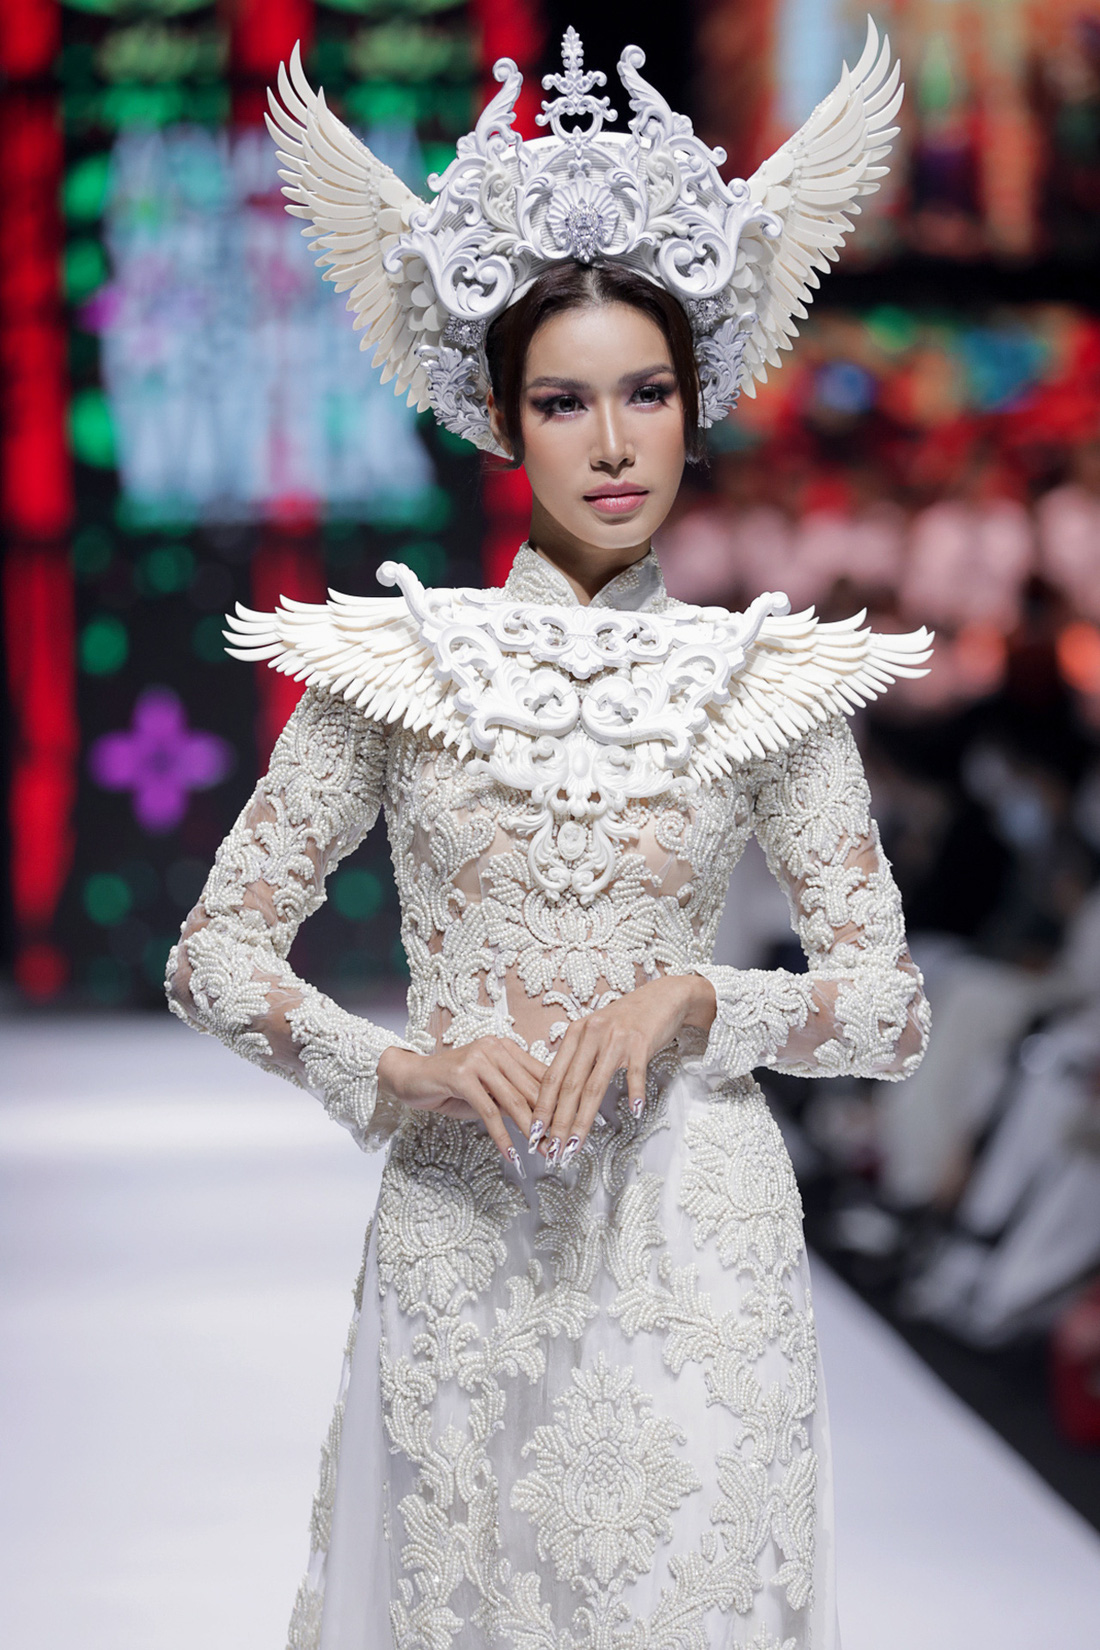 Hoa hậu Khánh Vân làm vedette, NSND Hồng Vân làm người mẫu catwalk cho nhà thiết kế Minh Châu - Ảnh 2.